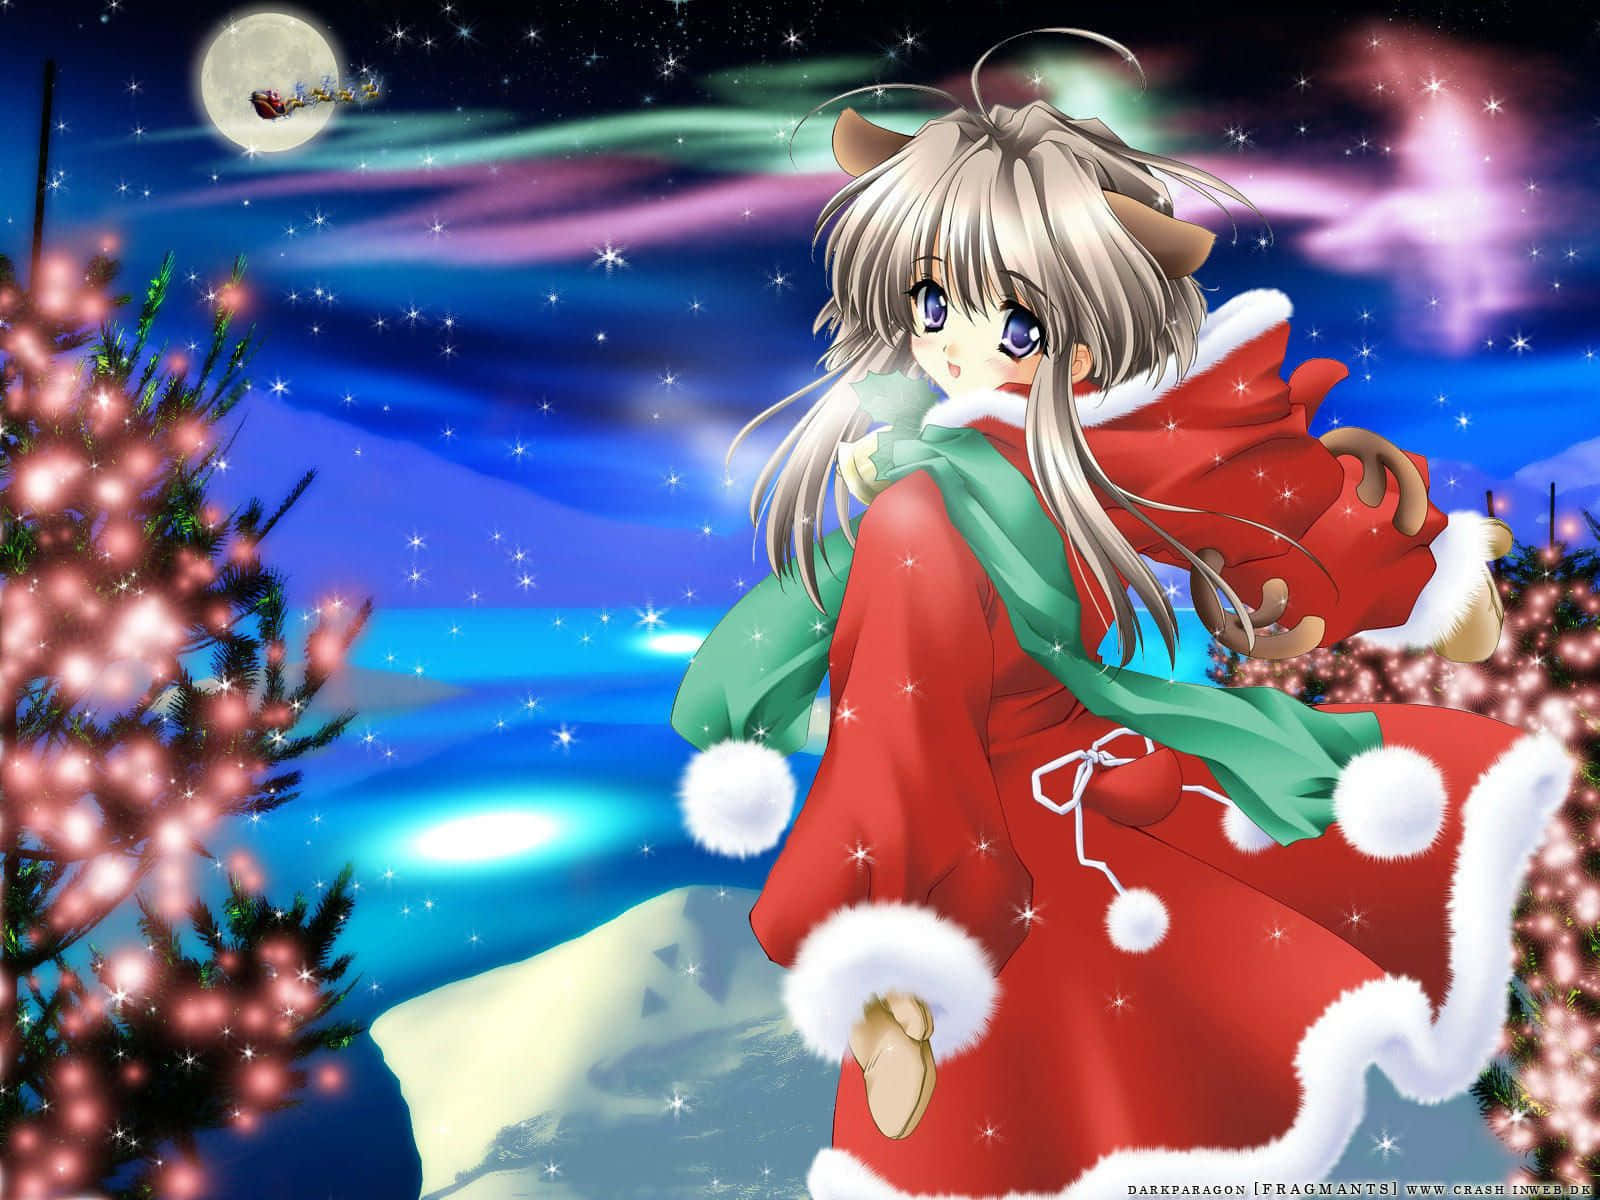 Christmas Anime Pfp Of Sakura With Ears Wallpaper